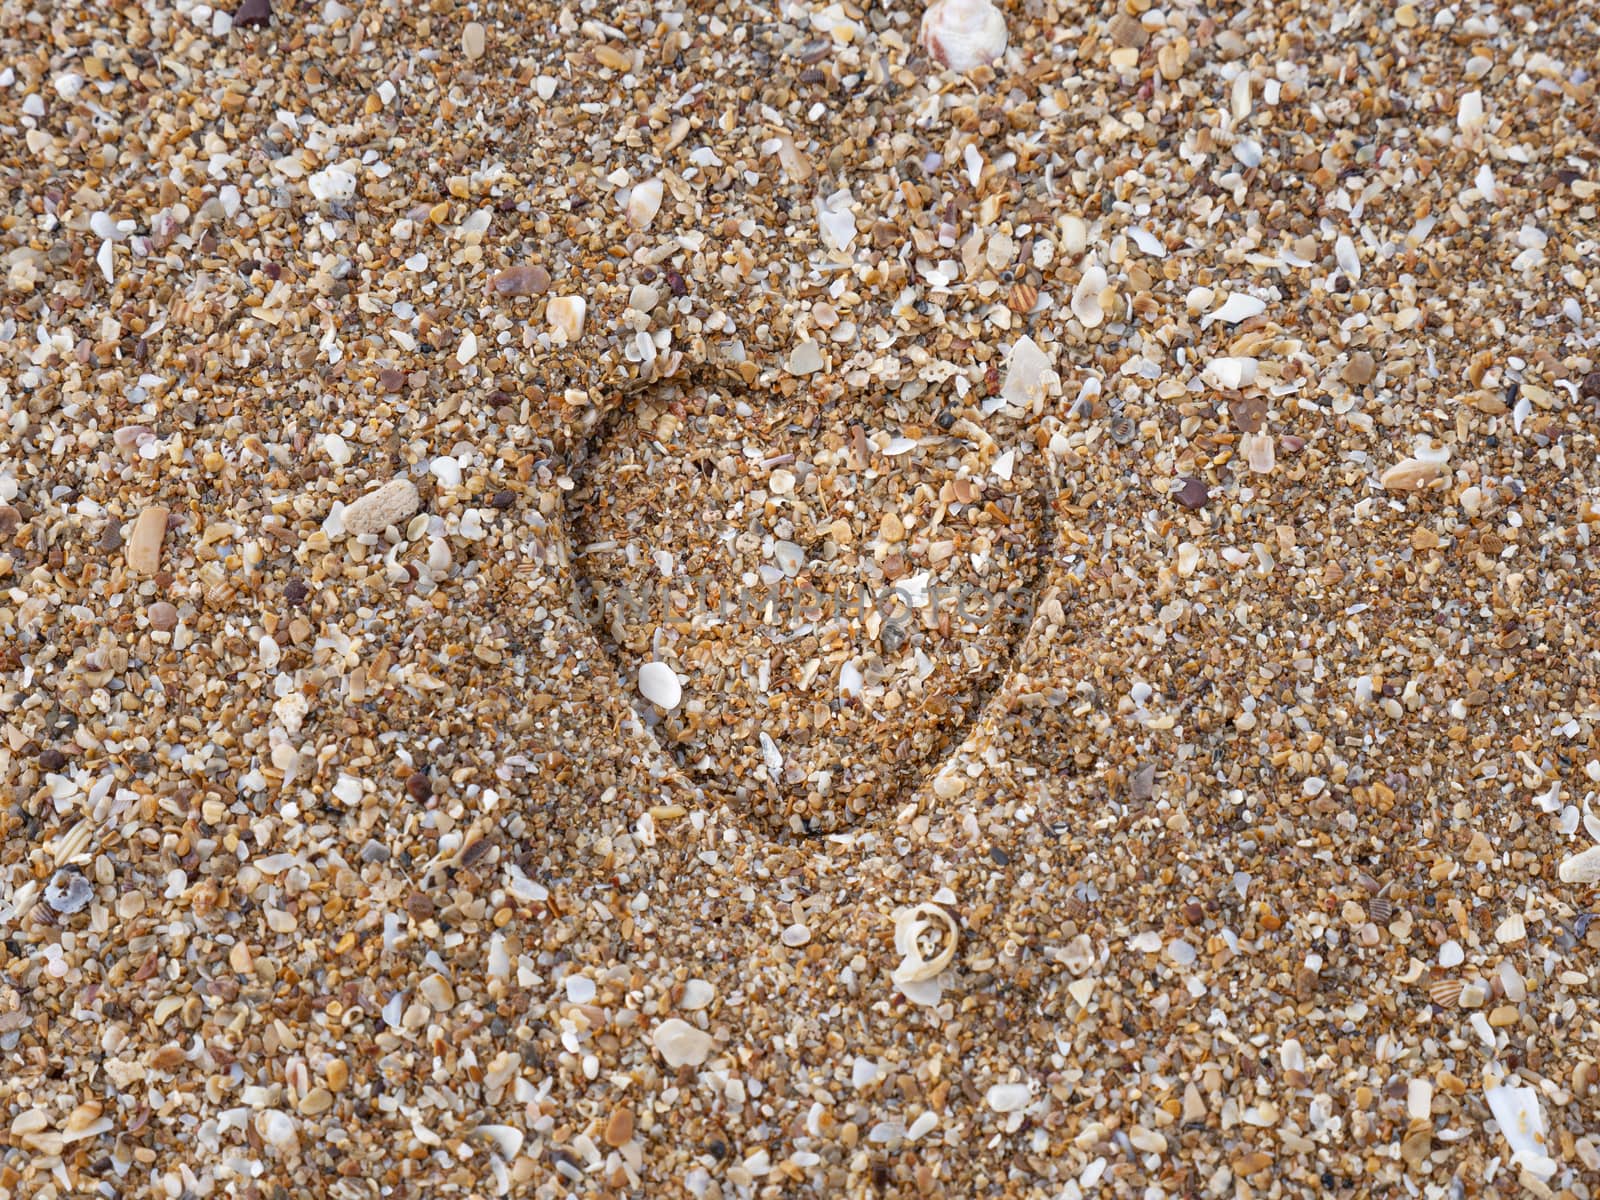 A heart impression on a sand at a sandy beach.